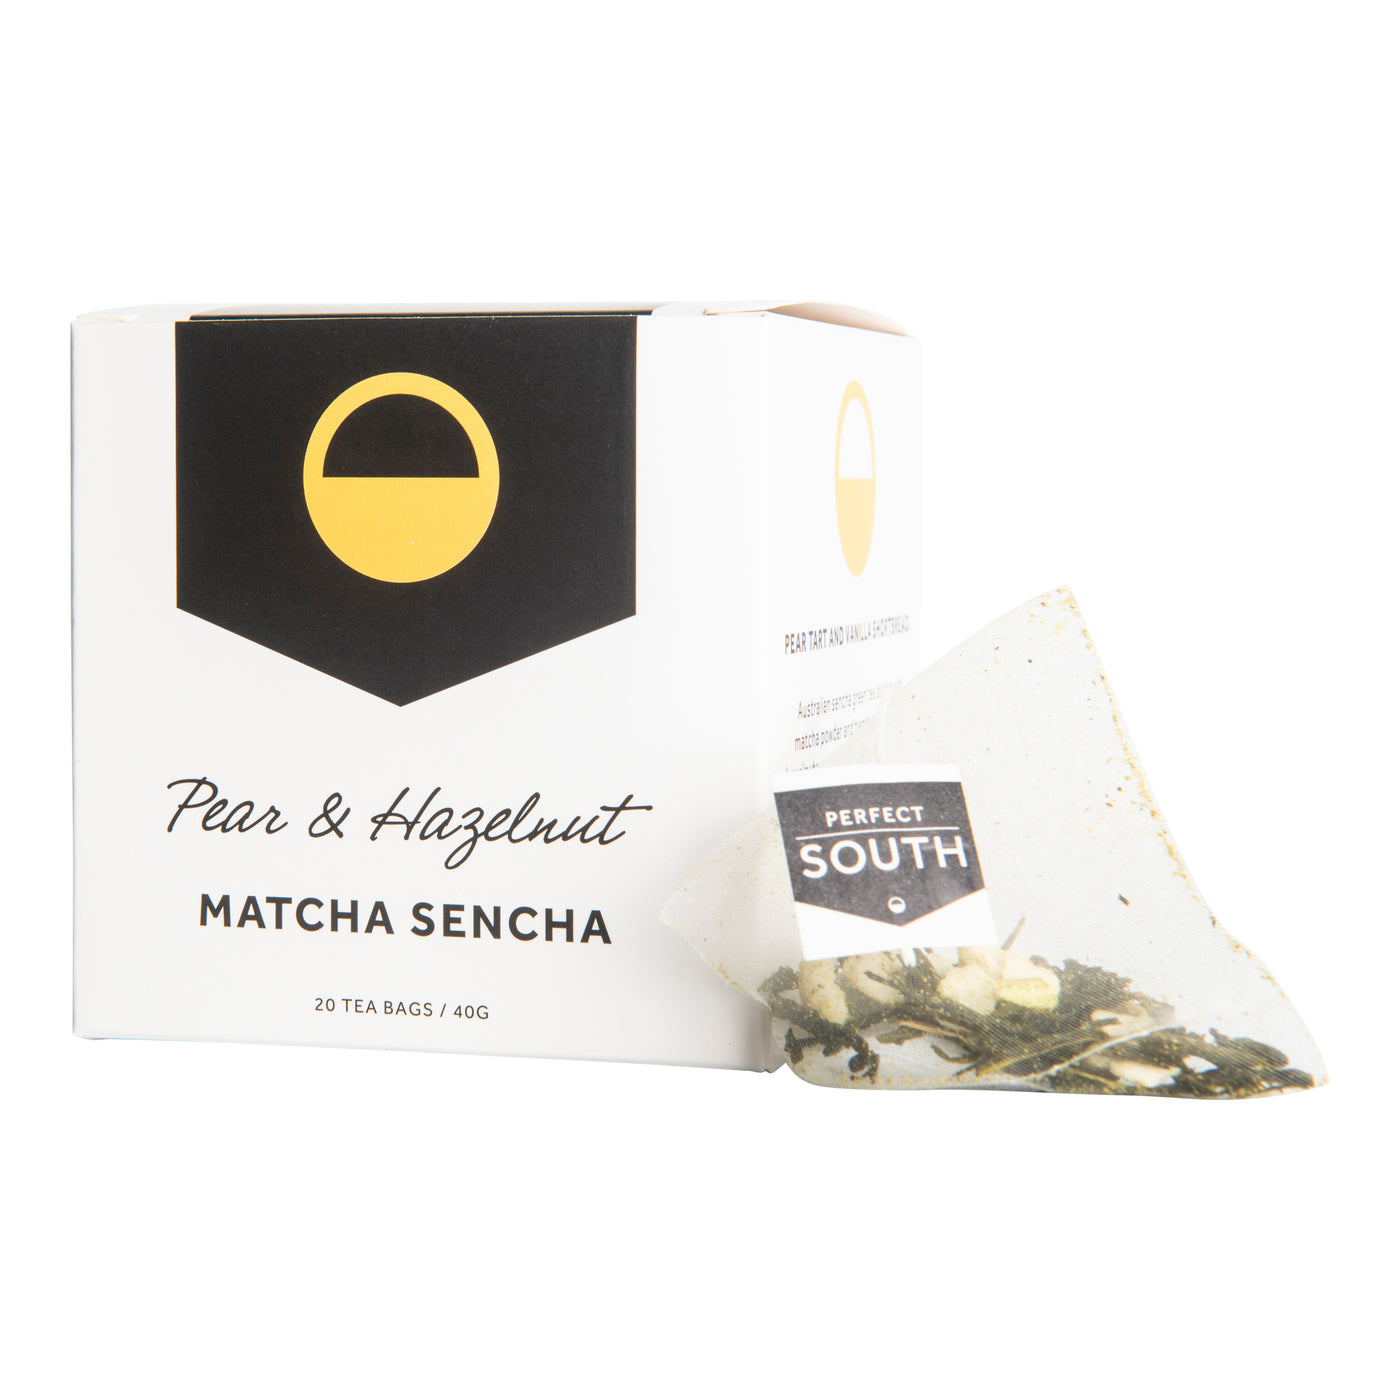 Pear & Hazelnut Matcha Sencha Pyramid Green Tea Bags